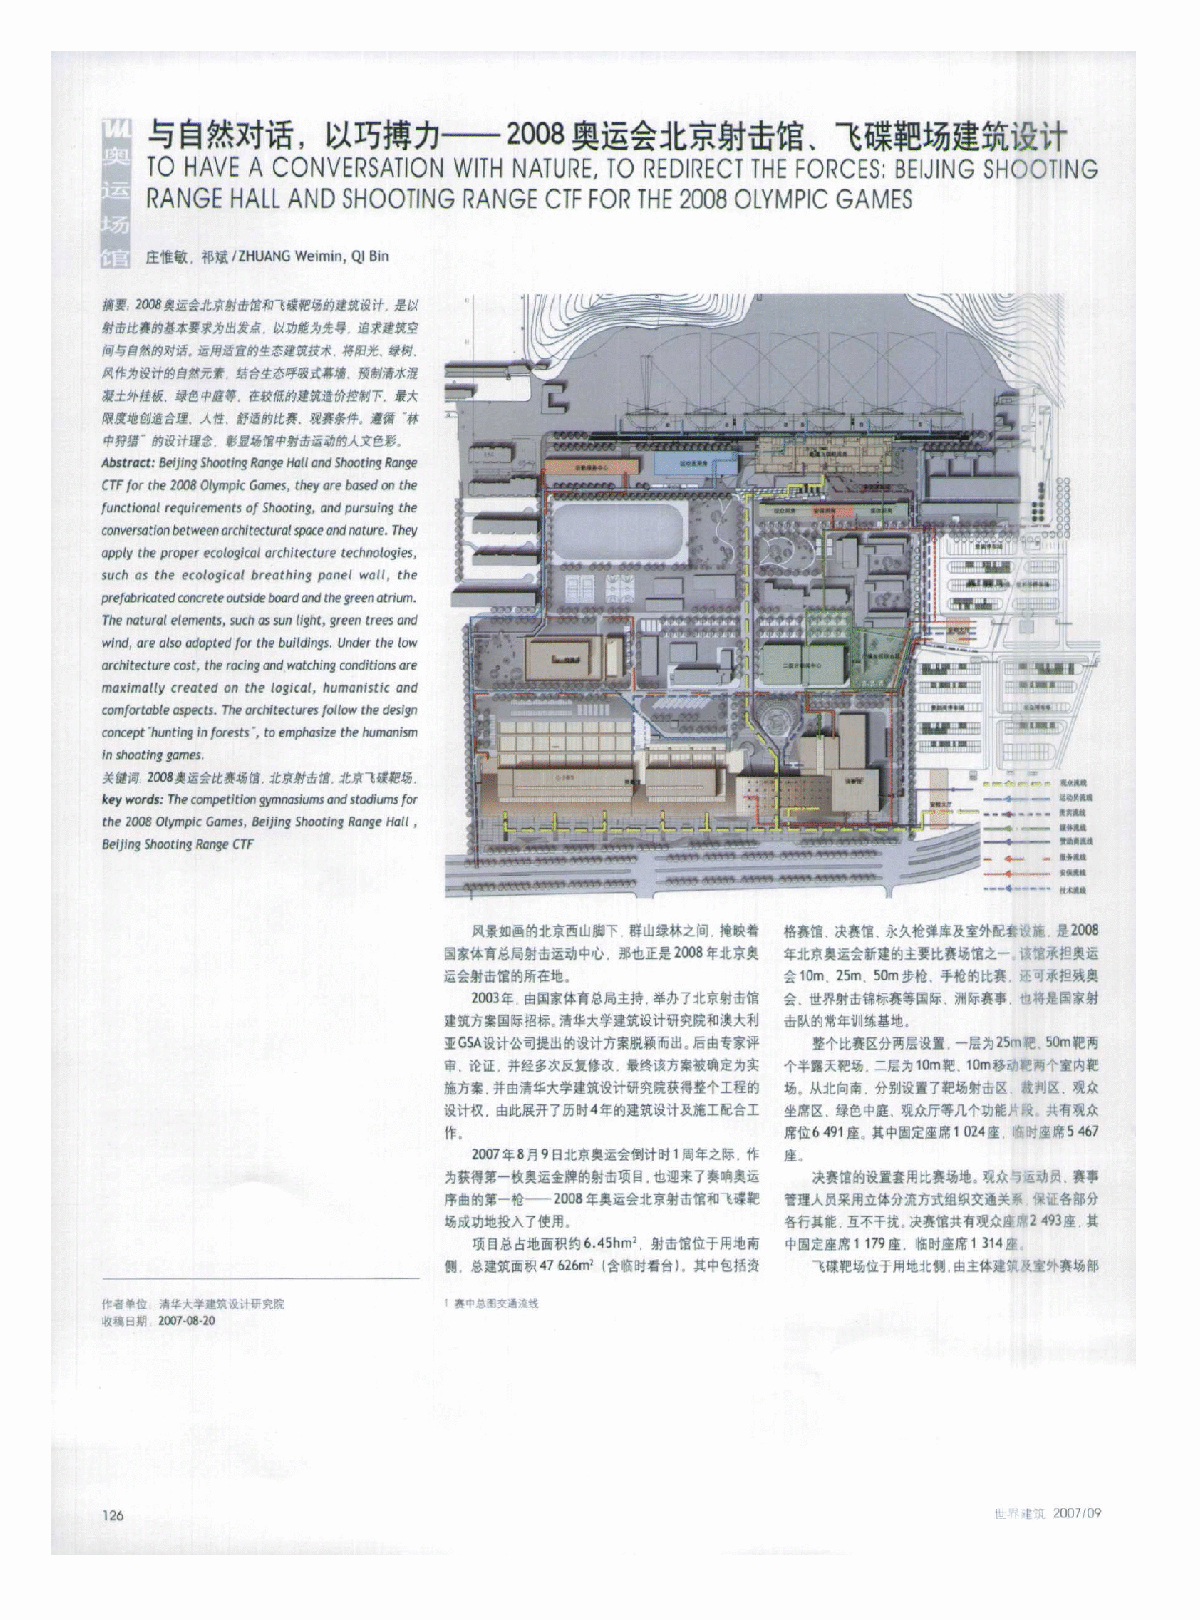 与自然对话,以巧搏力——2008奥运会北京射击馆、飞碟靶场建筑设计-图一